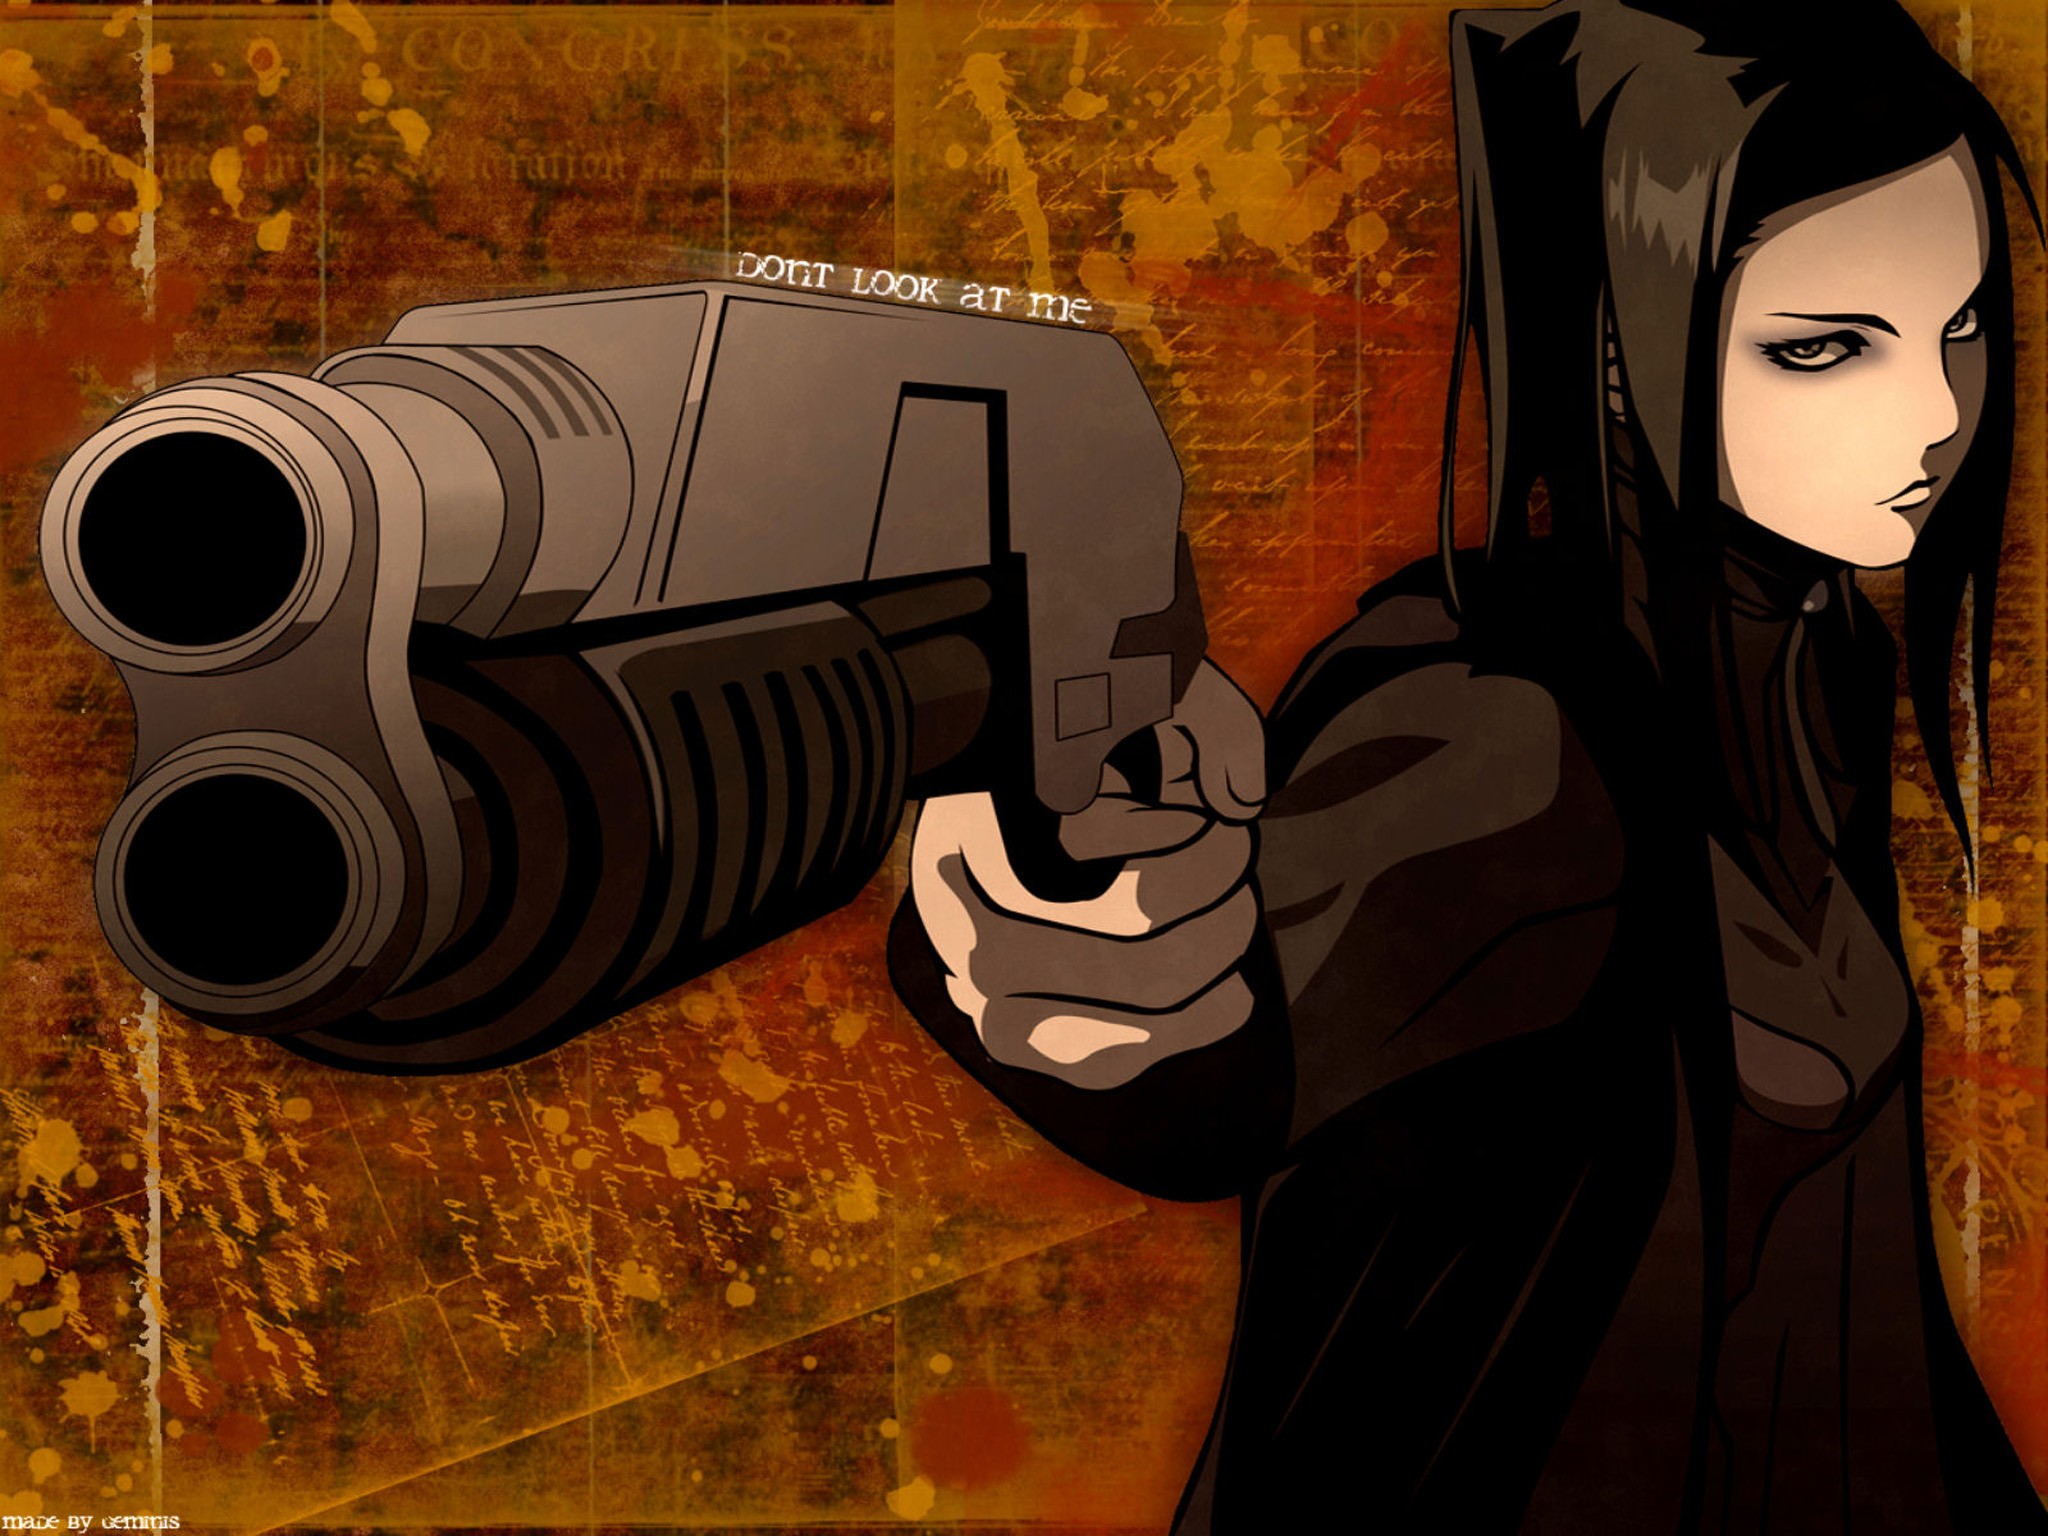 Anime 2048x1536 anime Ergo Proxy gun artwork shotgun anime girls women aiming weapon brunette girls with guns looking at viewer anime girls with guns